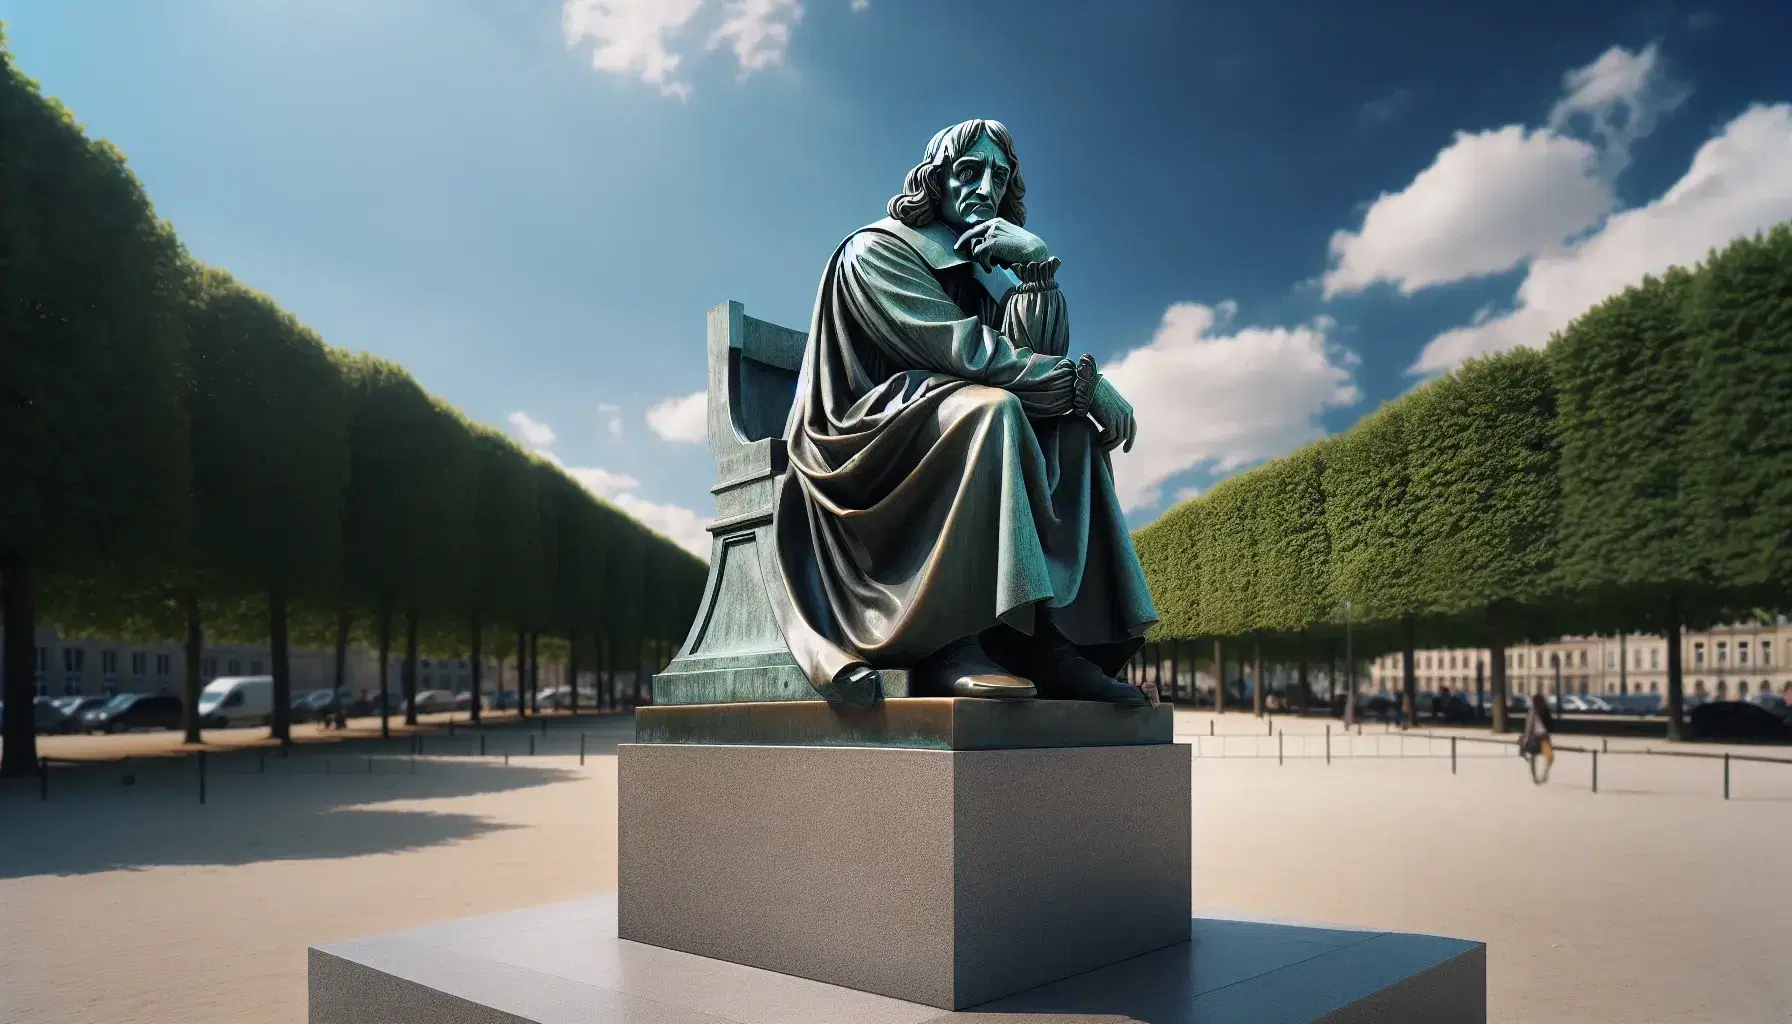 Estatua de bronce de René Descartes en pose pensativa, con un fondo de cielo azul y árboles verdes, destacando su figura filosófica e histórica.